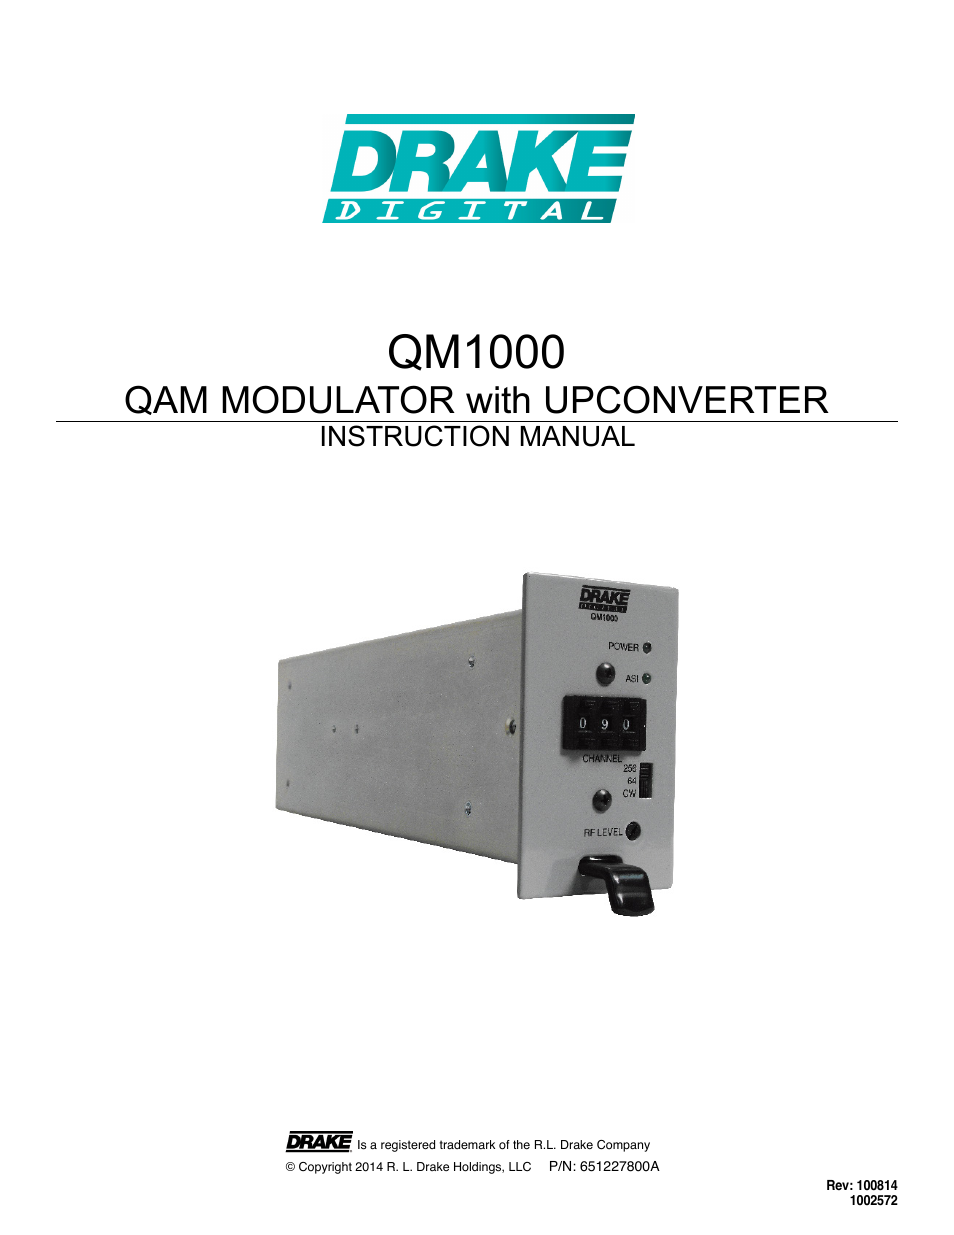 QM1000 Modular QAM Modulator